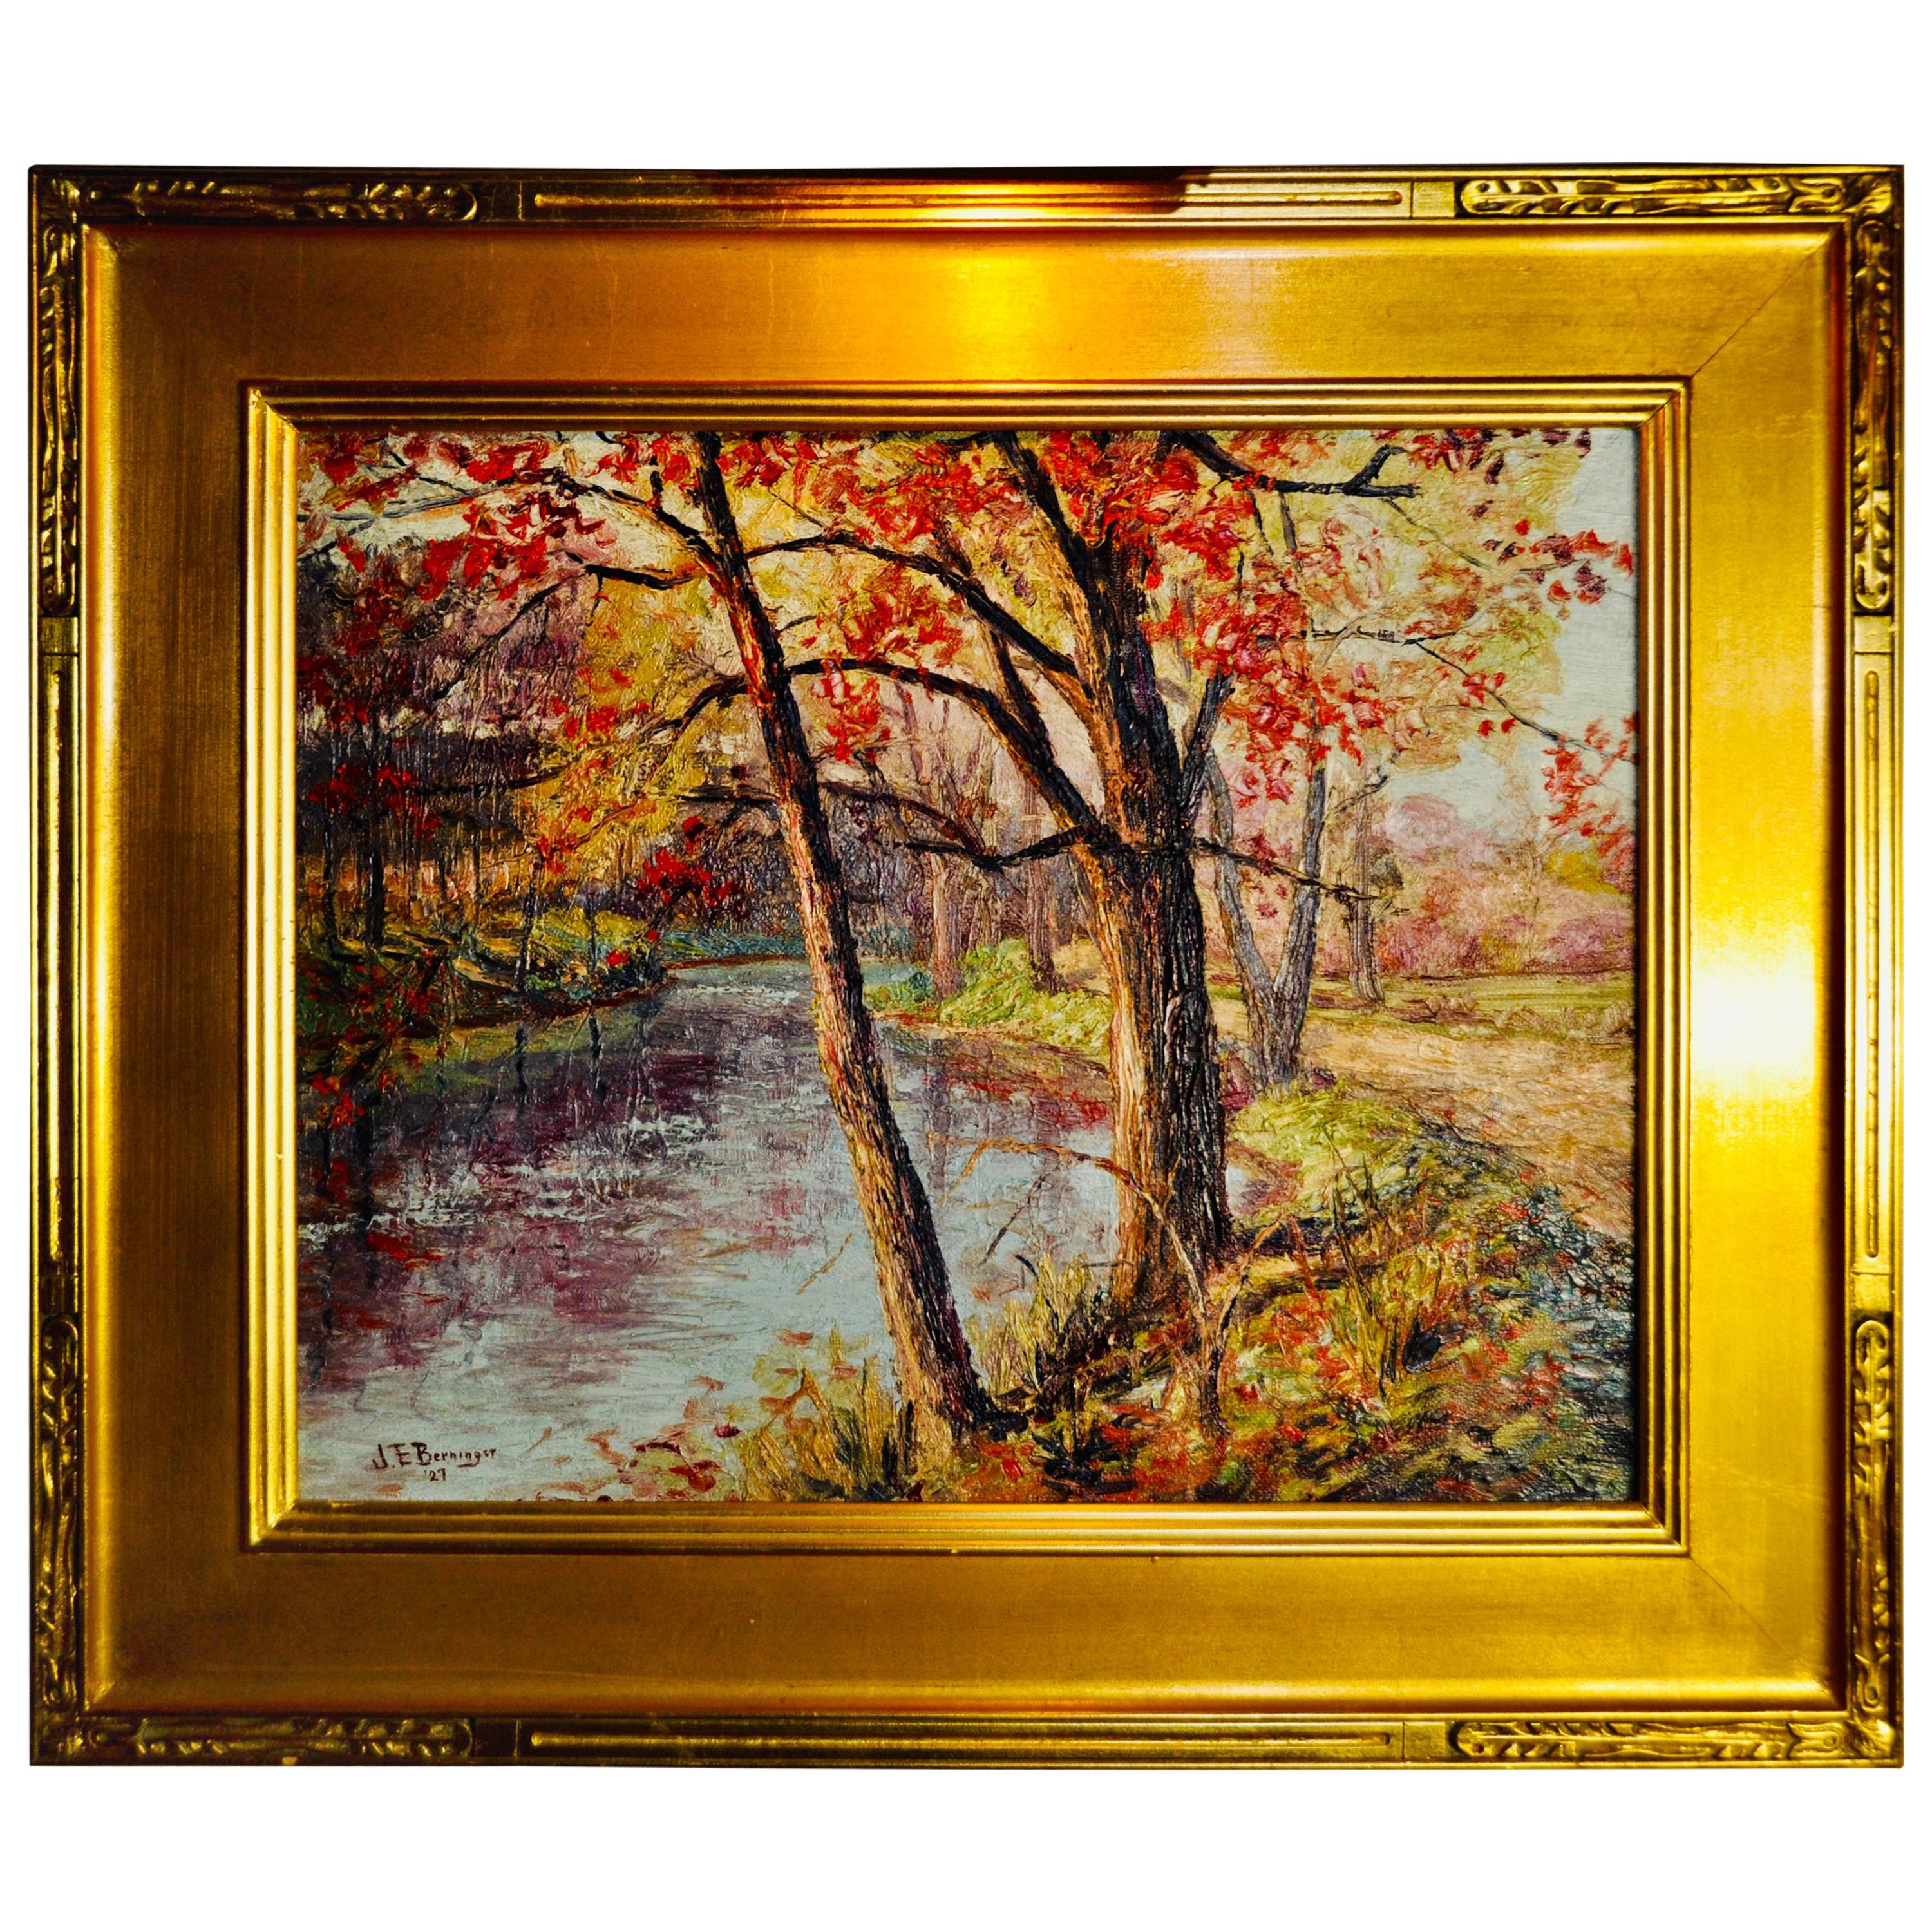 John E Berninger "Fall Along The Lehigh River" Oil On Canvas For Sale